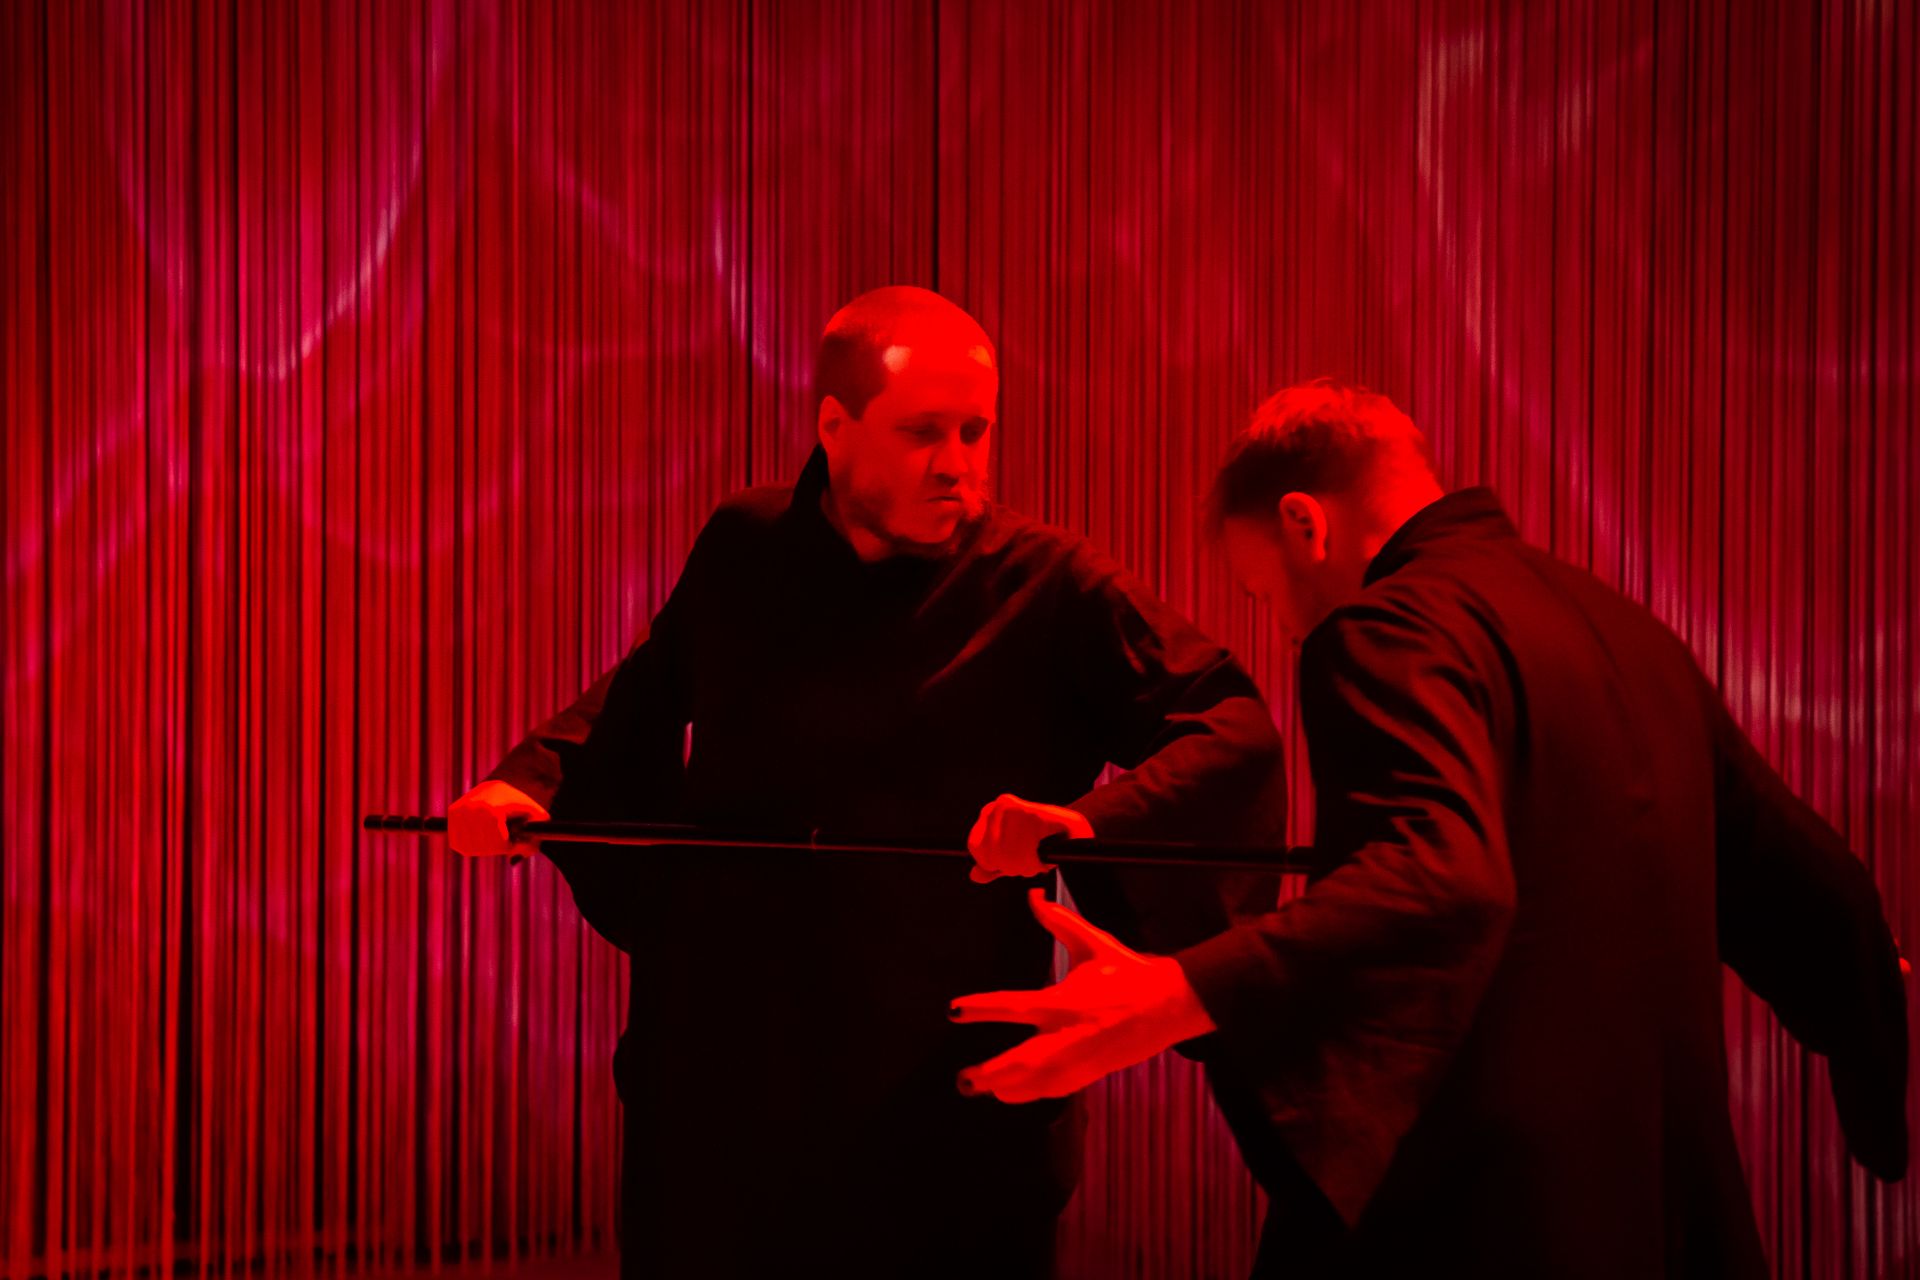 Dramaattisen punaisessa valaistuksessa DuvTeaternin tanssija Emil tökkää tanssikepillä tanssija-Eeroa torsoon. Molemmilla on päällään mustat kimonot.